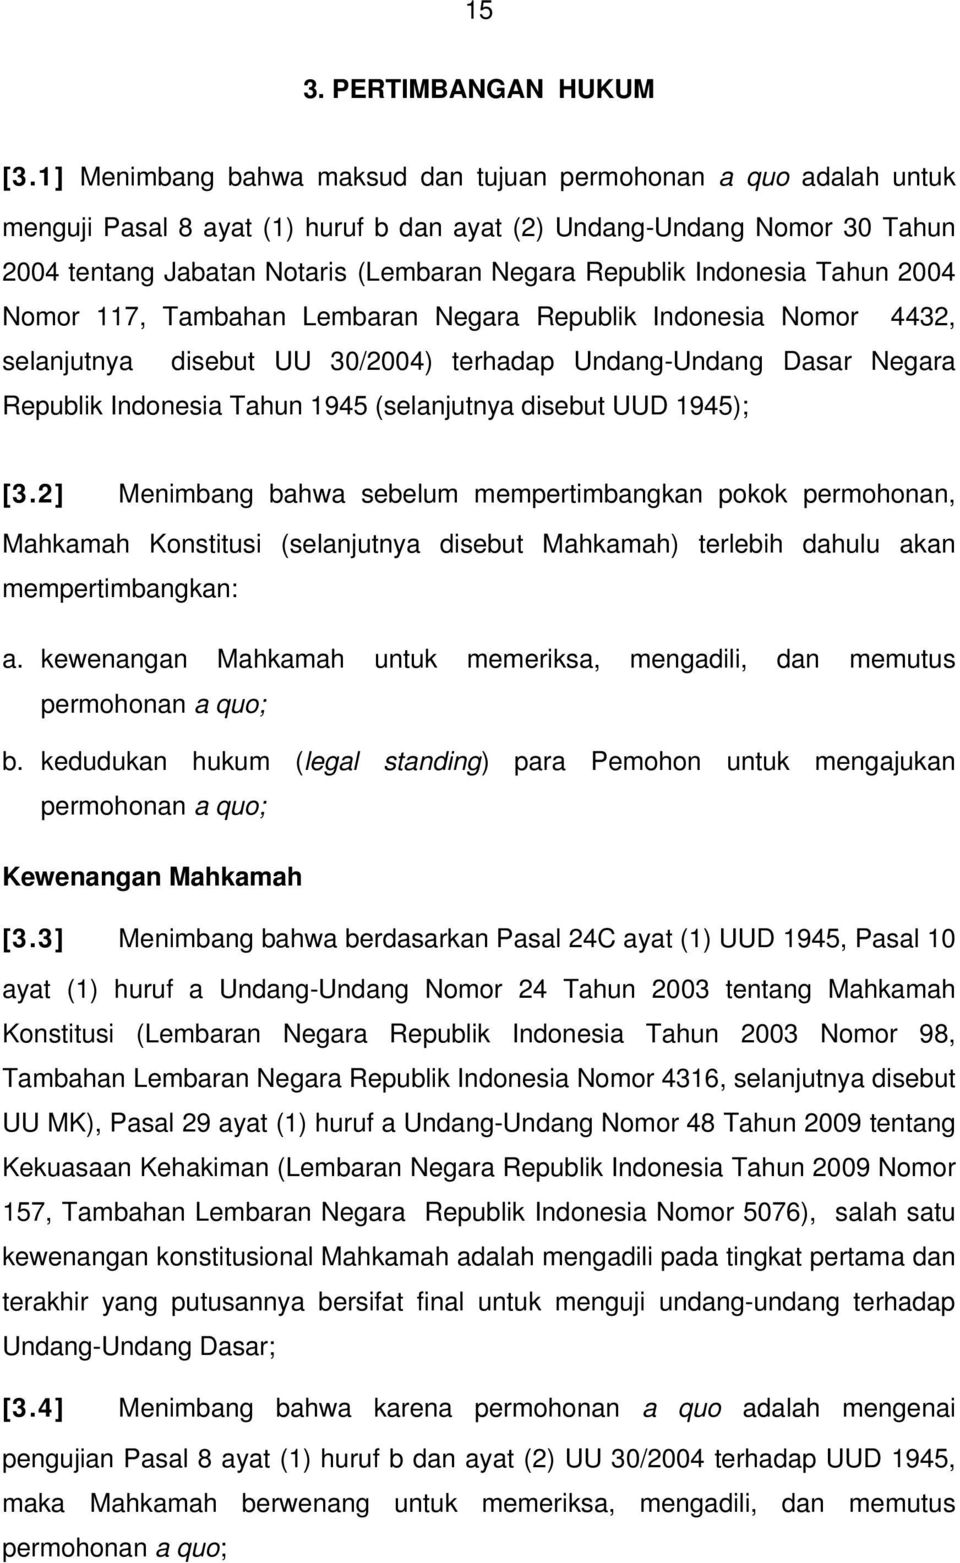 Indonesia Tahun 2004 Nomor 117, Tambahan Lembaran Negara Republik Indonesia Nomor 4432, selanjutnya disebut UU 30/2004) terhadap Undang-Undang Dasar Negara Republik Indonesia Tahun 1945 (selanjutnya